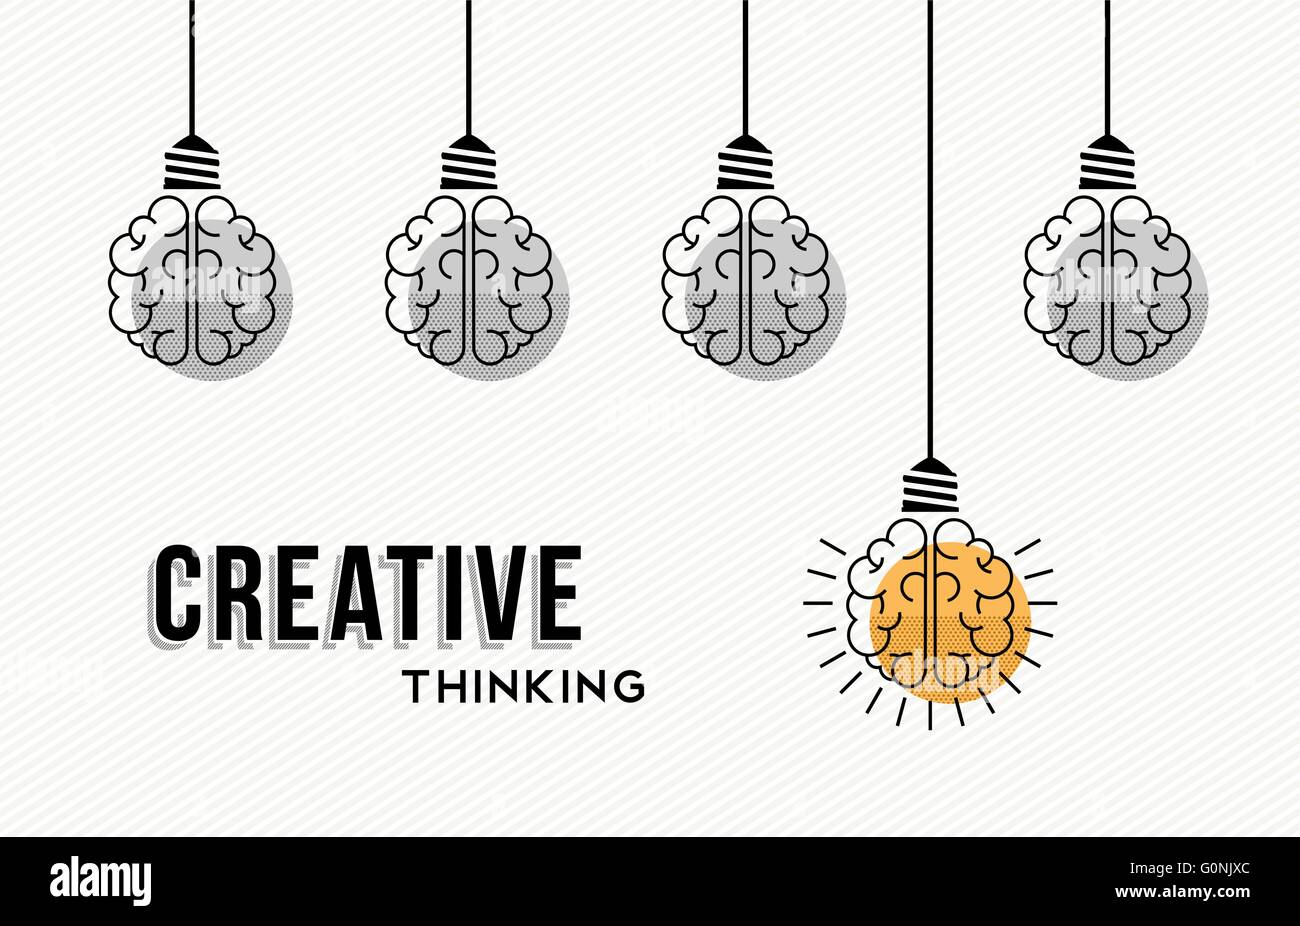 Moderno pensiero creativo concept design, cervello umano in bianco e nero con uno colorato ottenendo un'idea. EPS10 vettore. Illustrazione Vettoriale